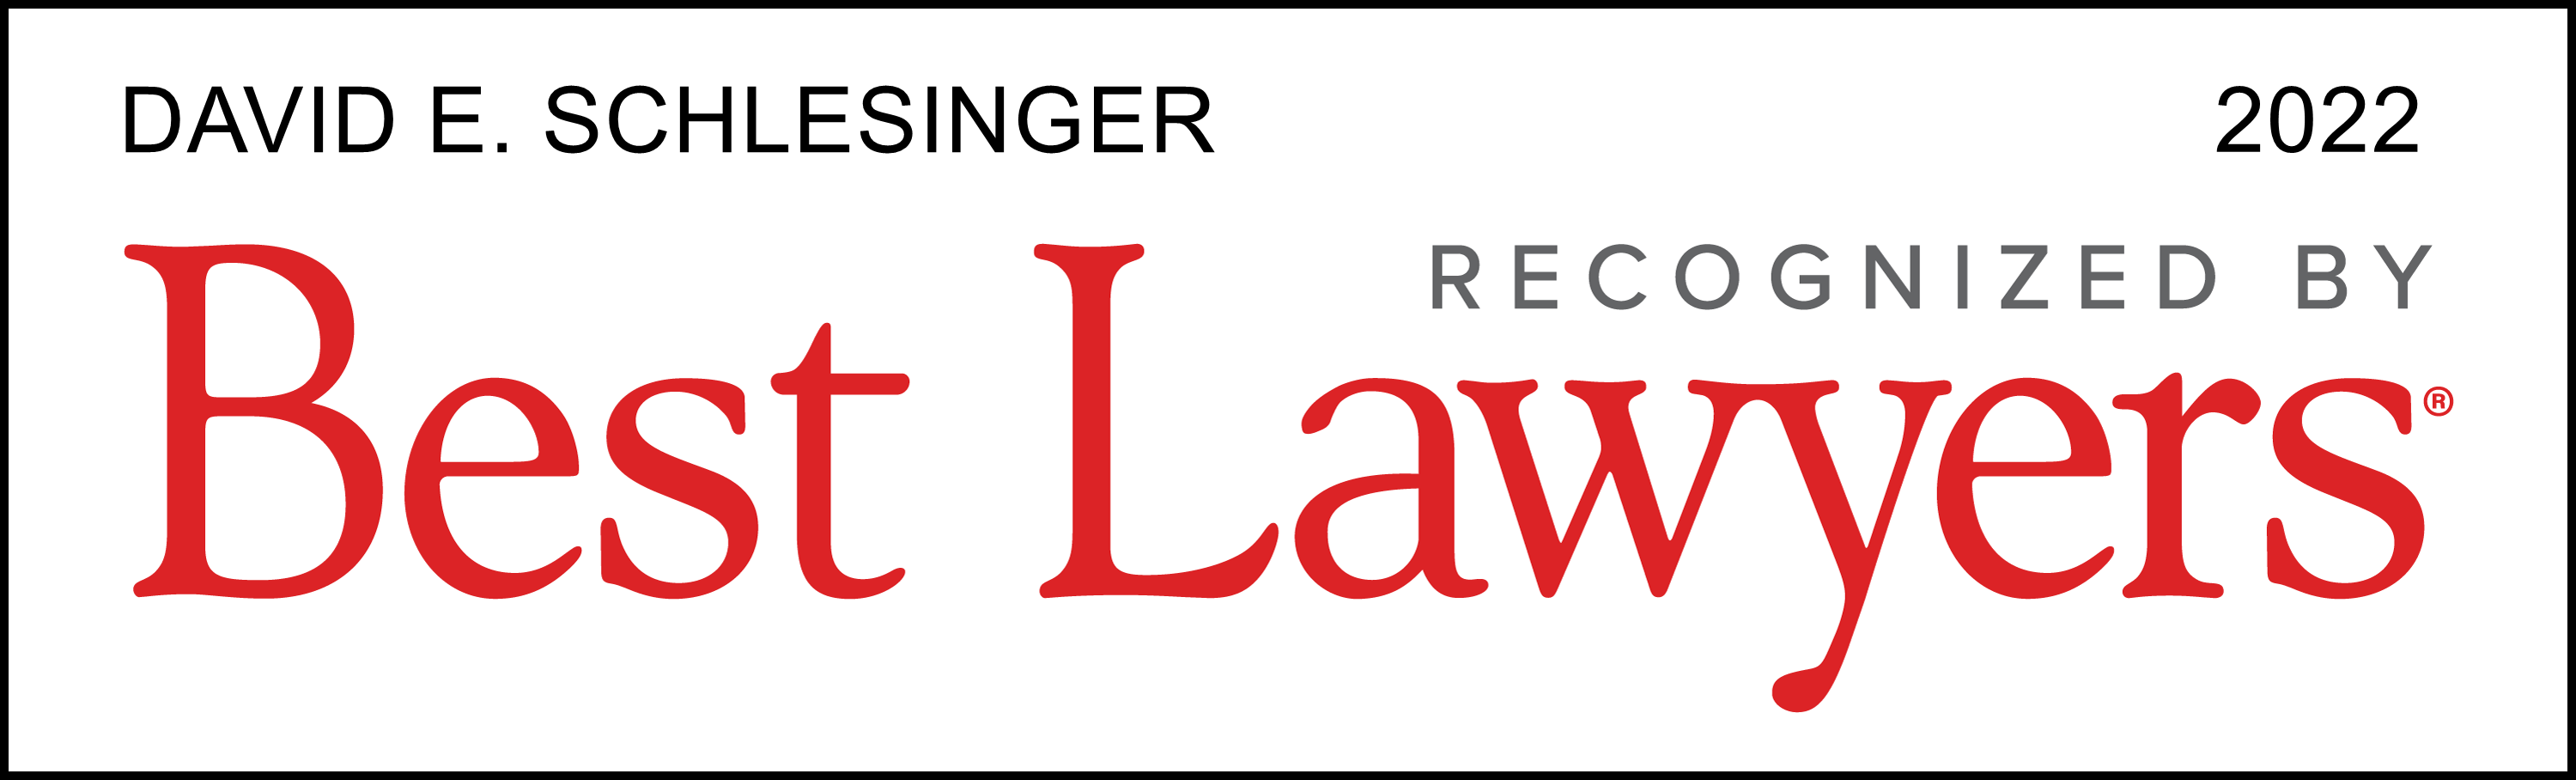 Best Lawyers - Lawyer Logo